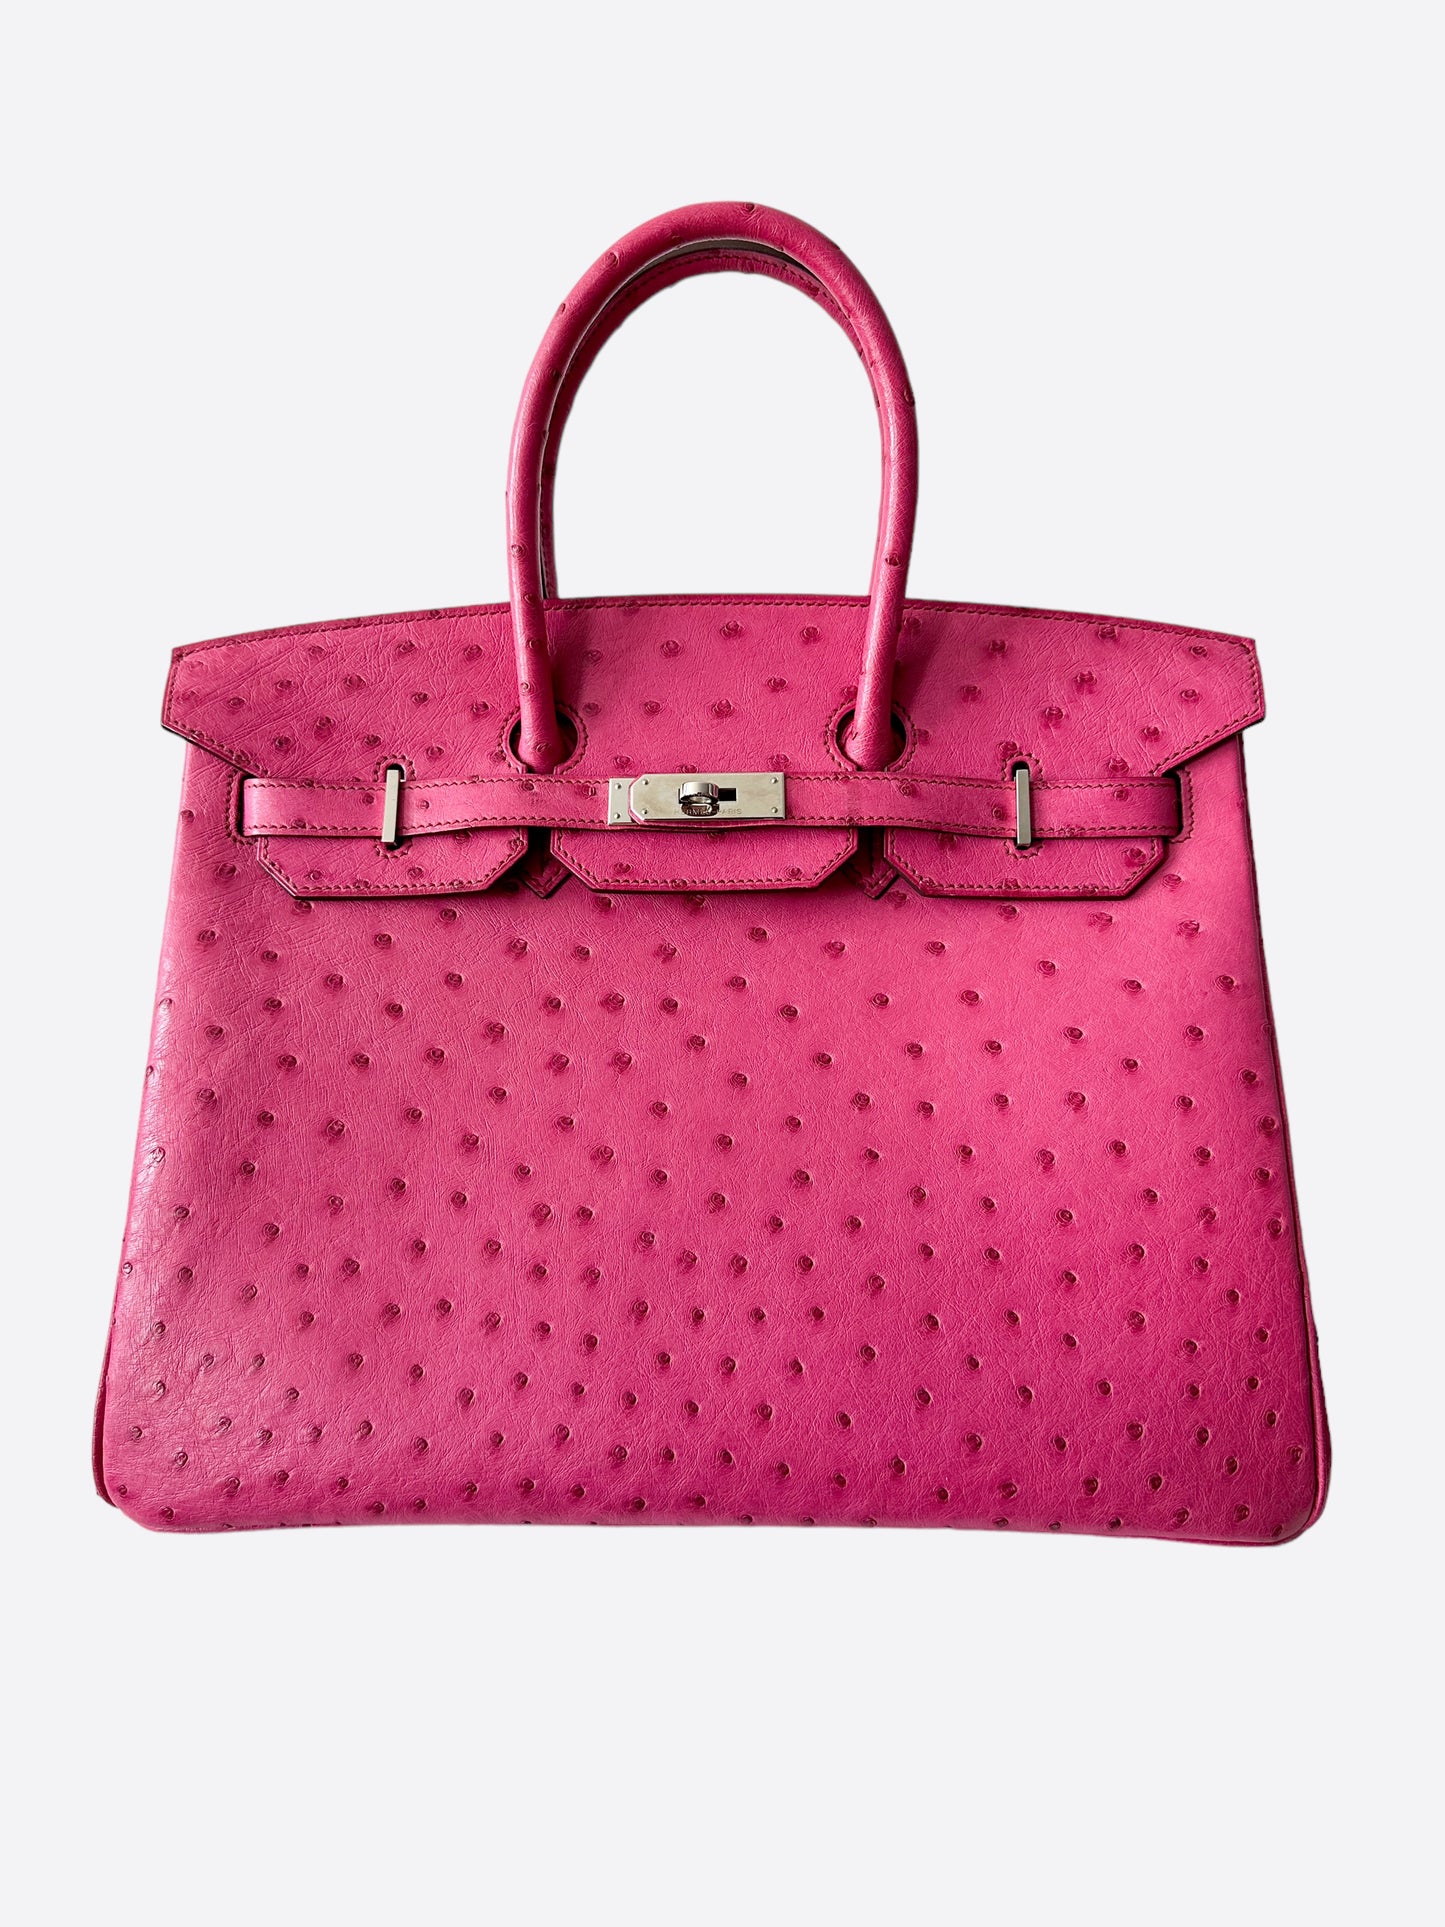 Hermes Pink Ostrich Birkin Bag, Official Hermes For Sale Price 2022